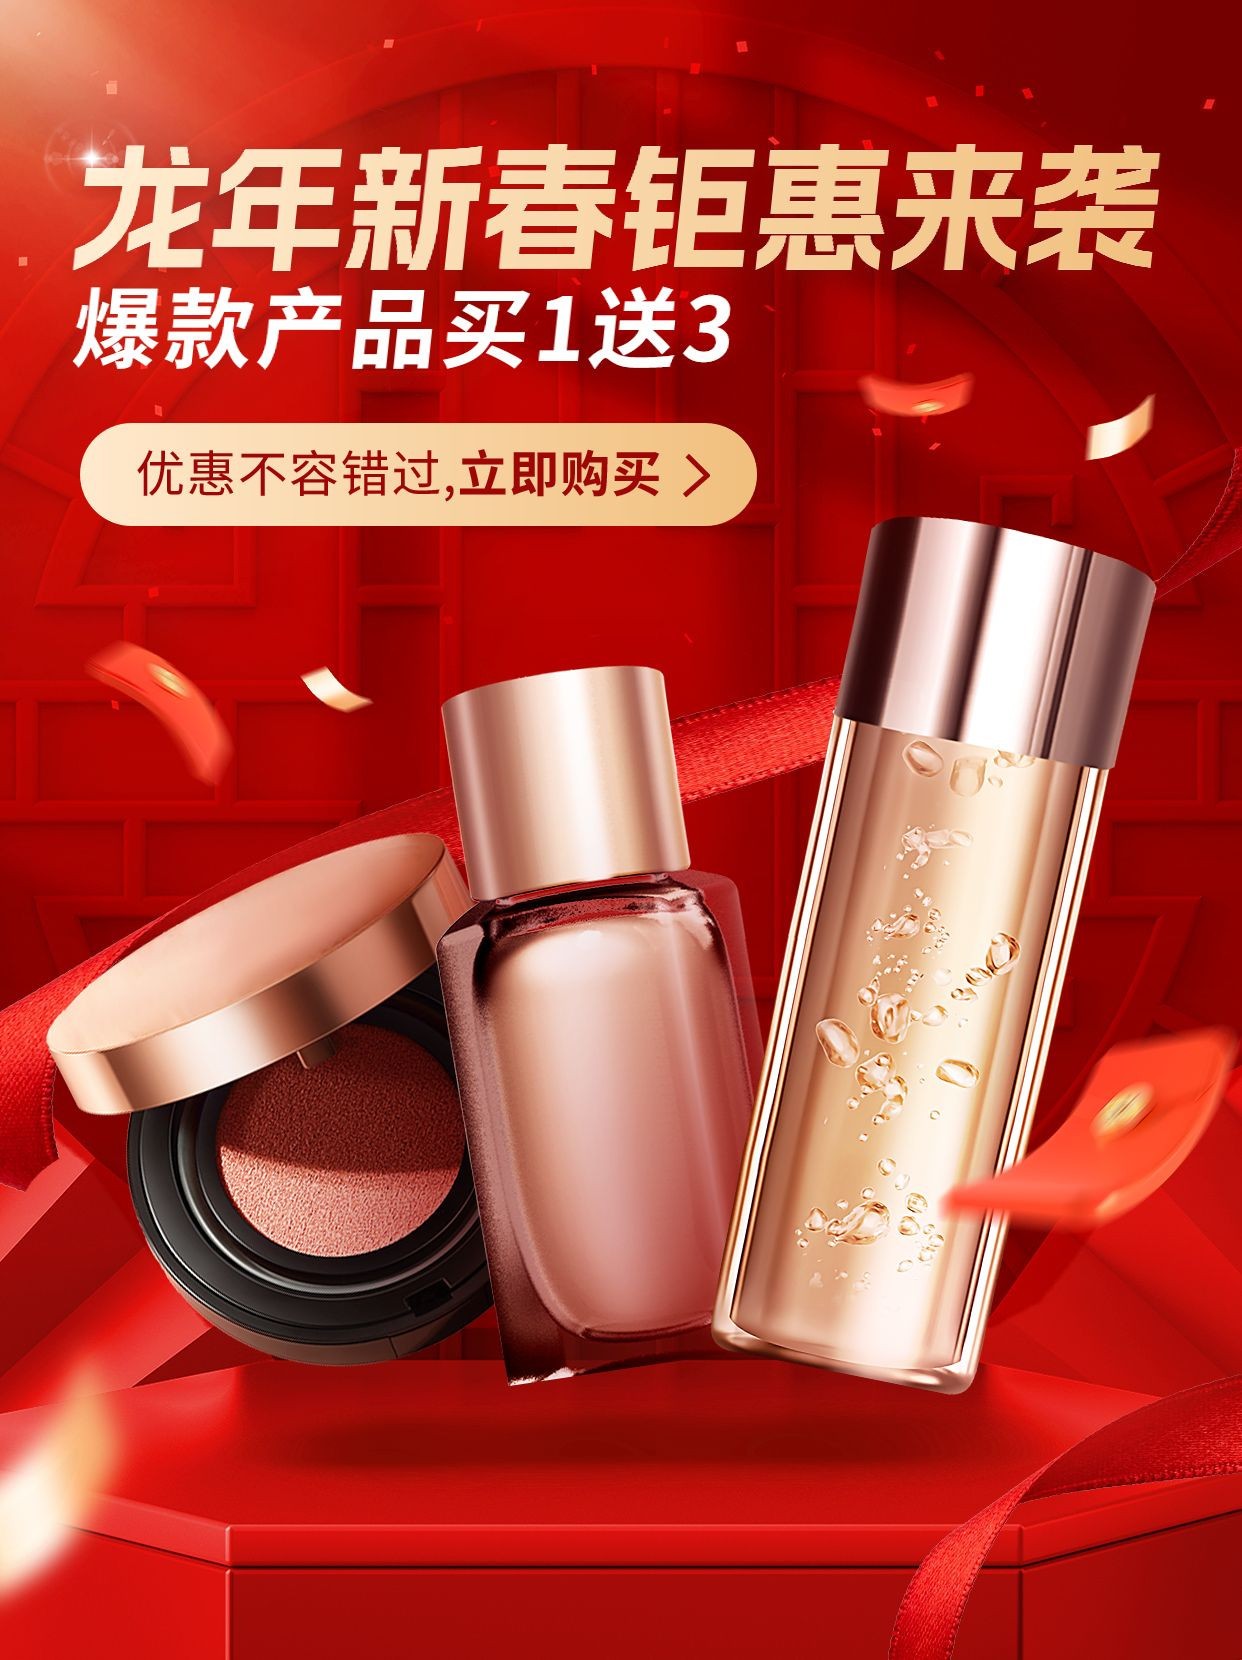 春节新春促销活动美妆产品小红书配图预览效果